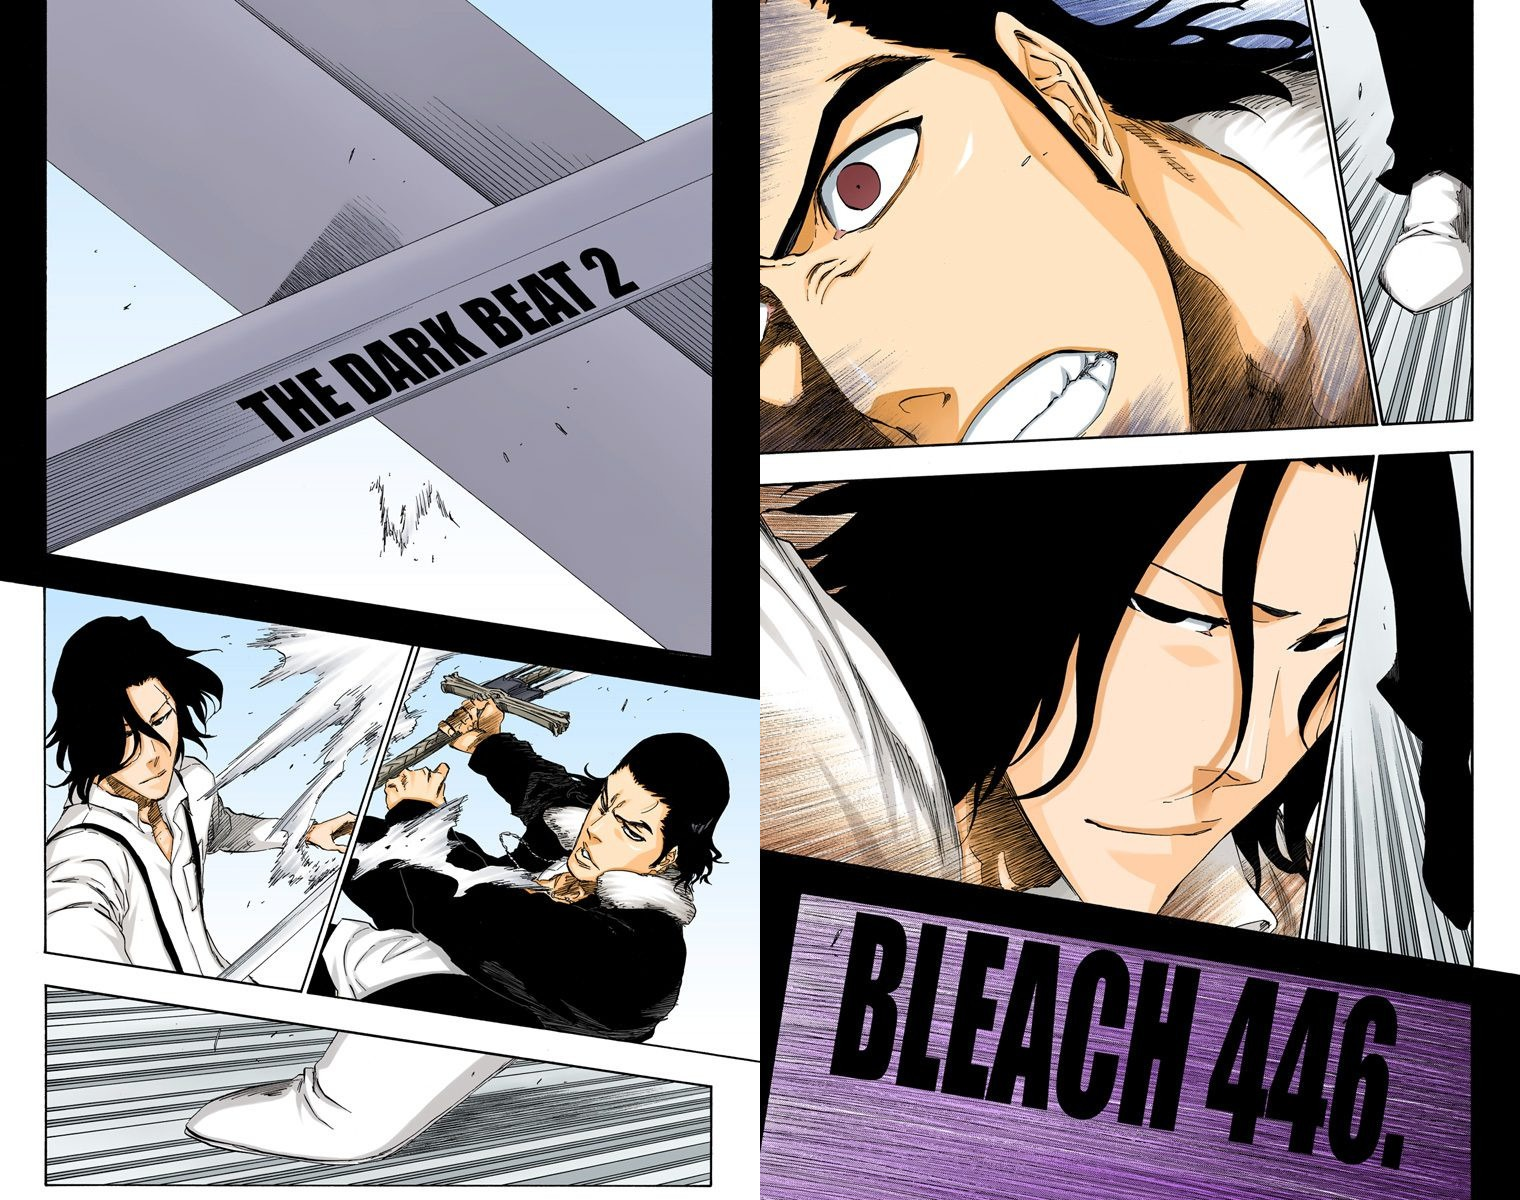 Bleach Chapter 451 – The Cornered Ichigo